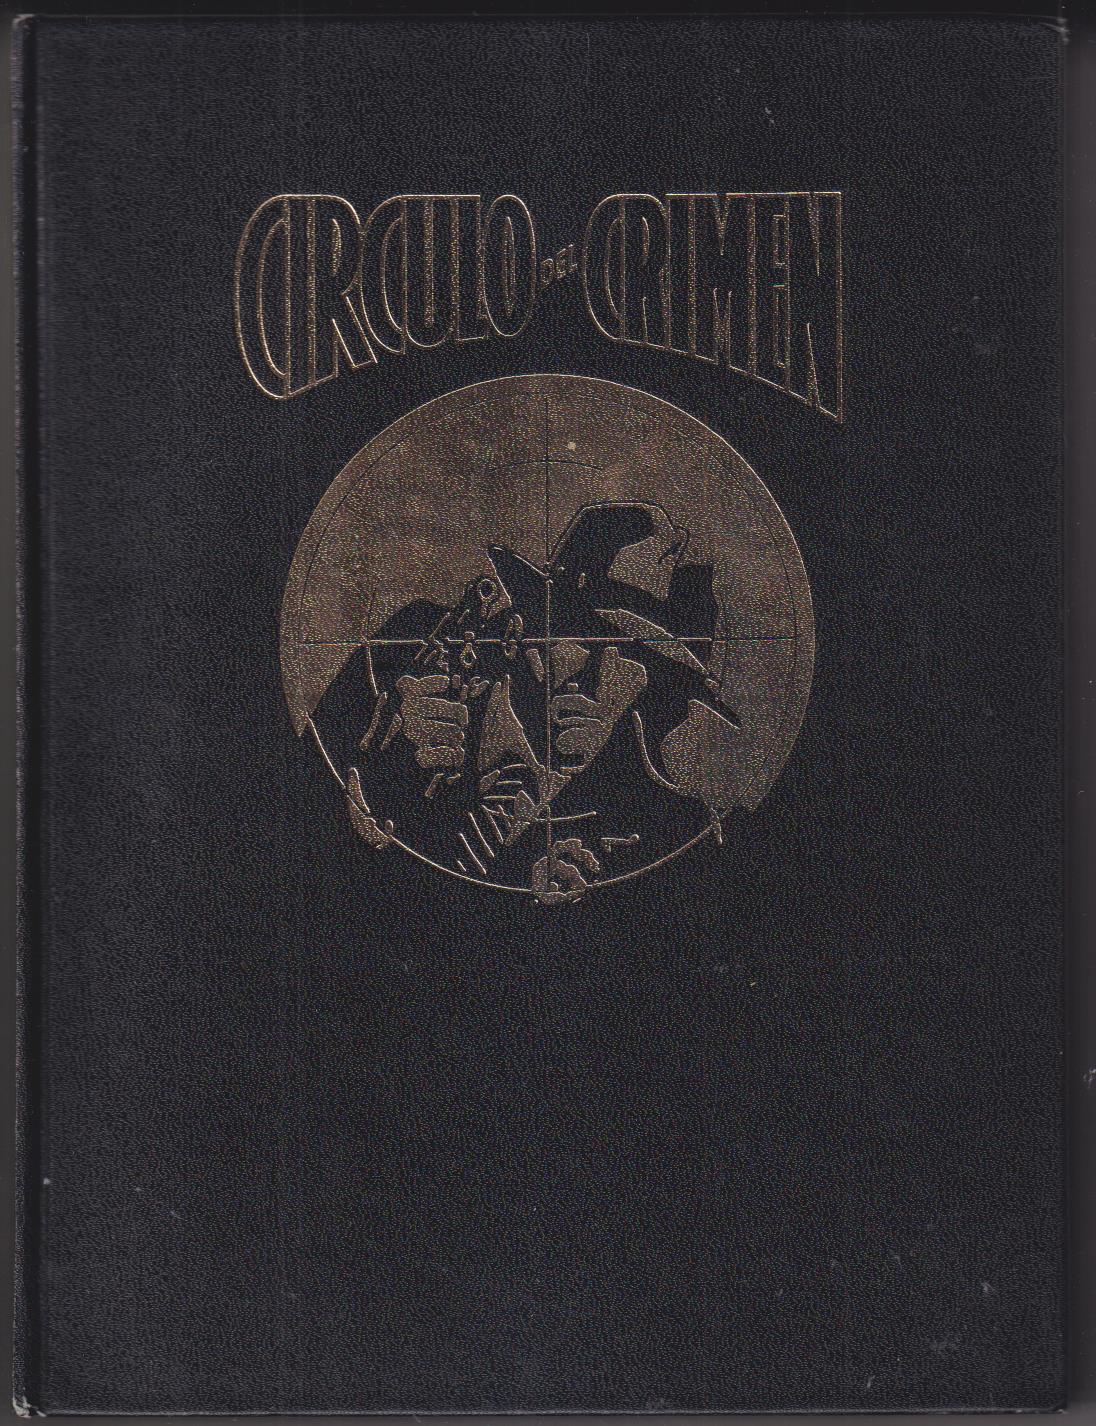 Círculo del Crimen Tomo I. Forum (del 1 al 6) Pastas duras, 534 páginas